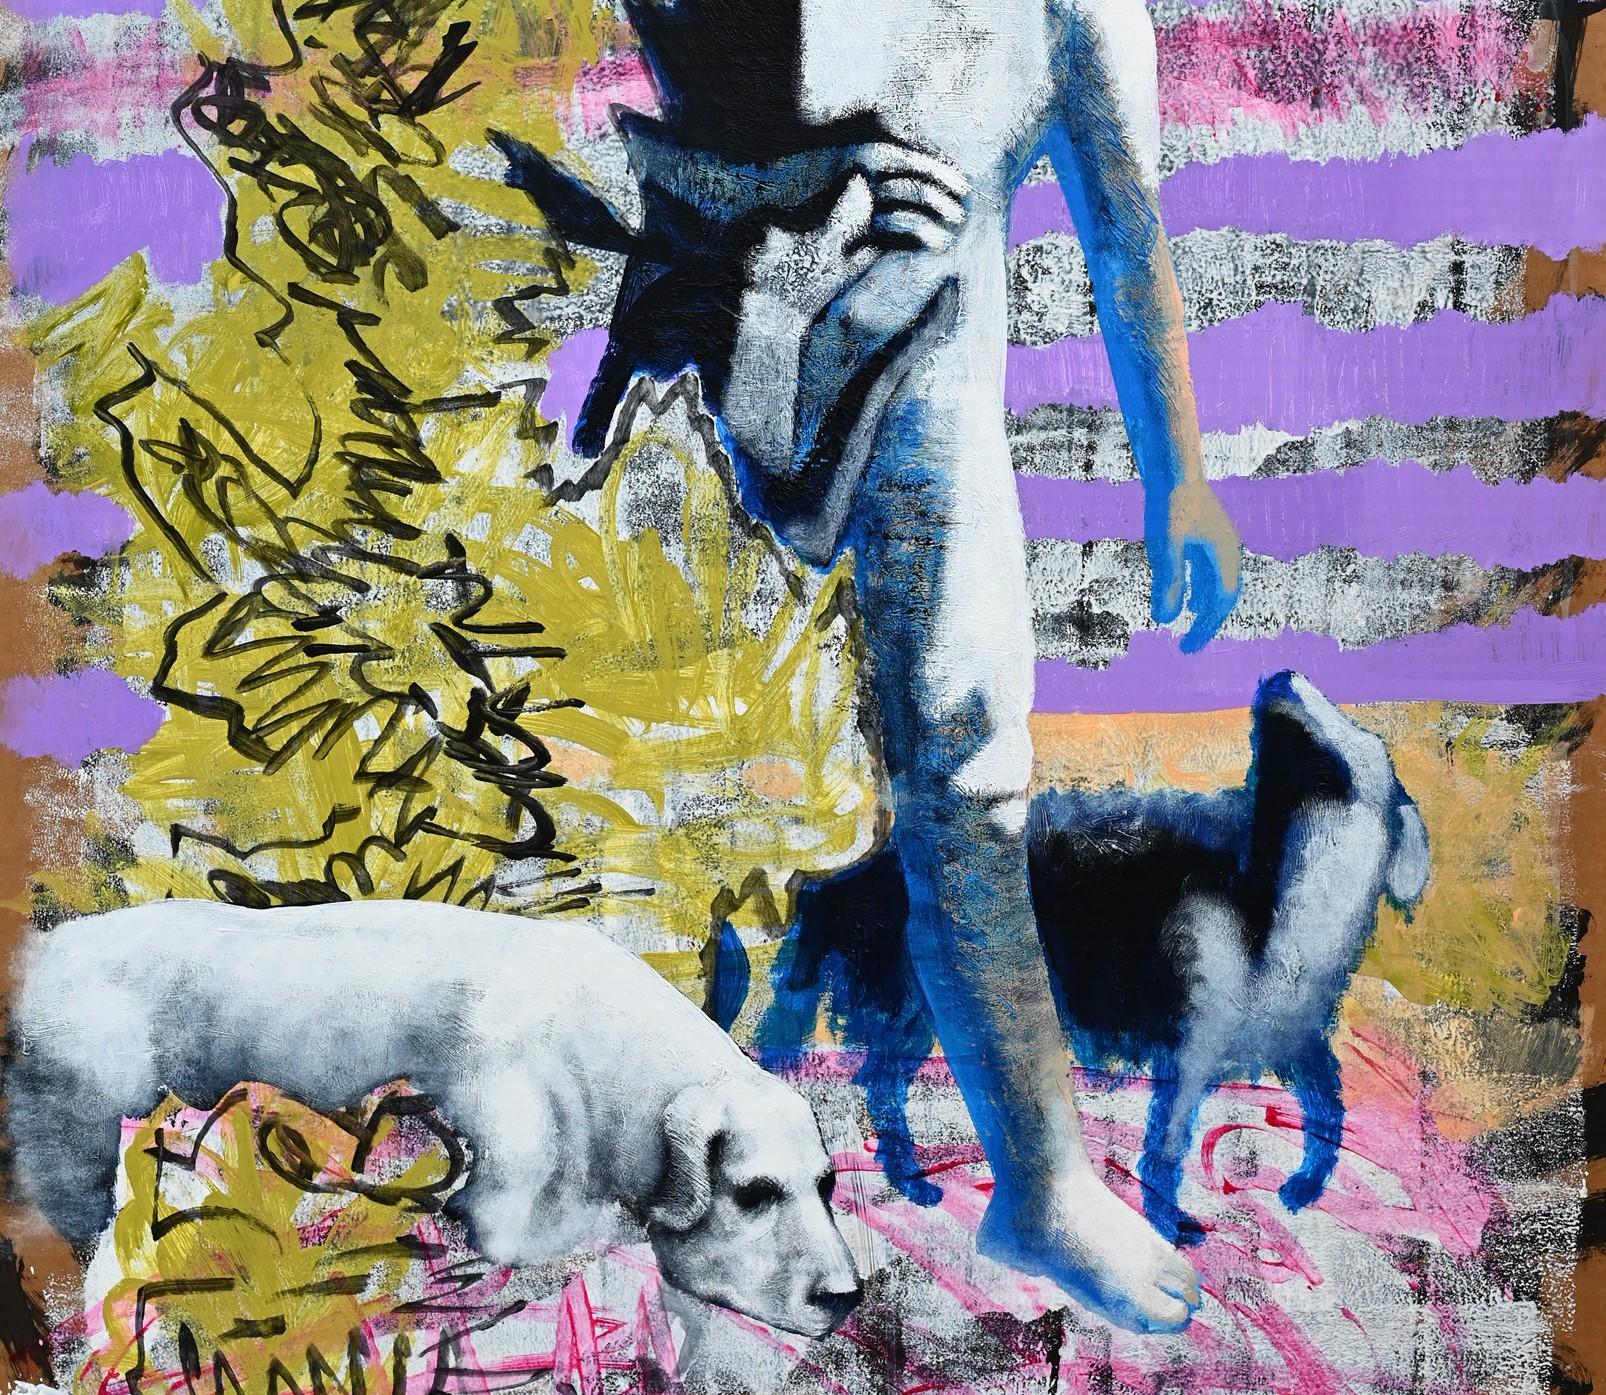 Mann mit Hunden, 2023
Acryl auf Karton
119 H x 79 B cm

In der Serie der bemalten Pappen von Alexandru Rădvan geht es um unsere 